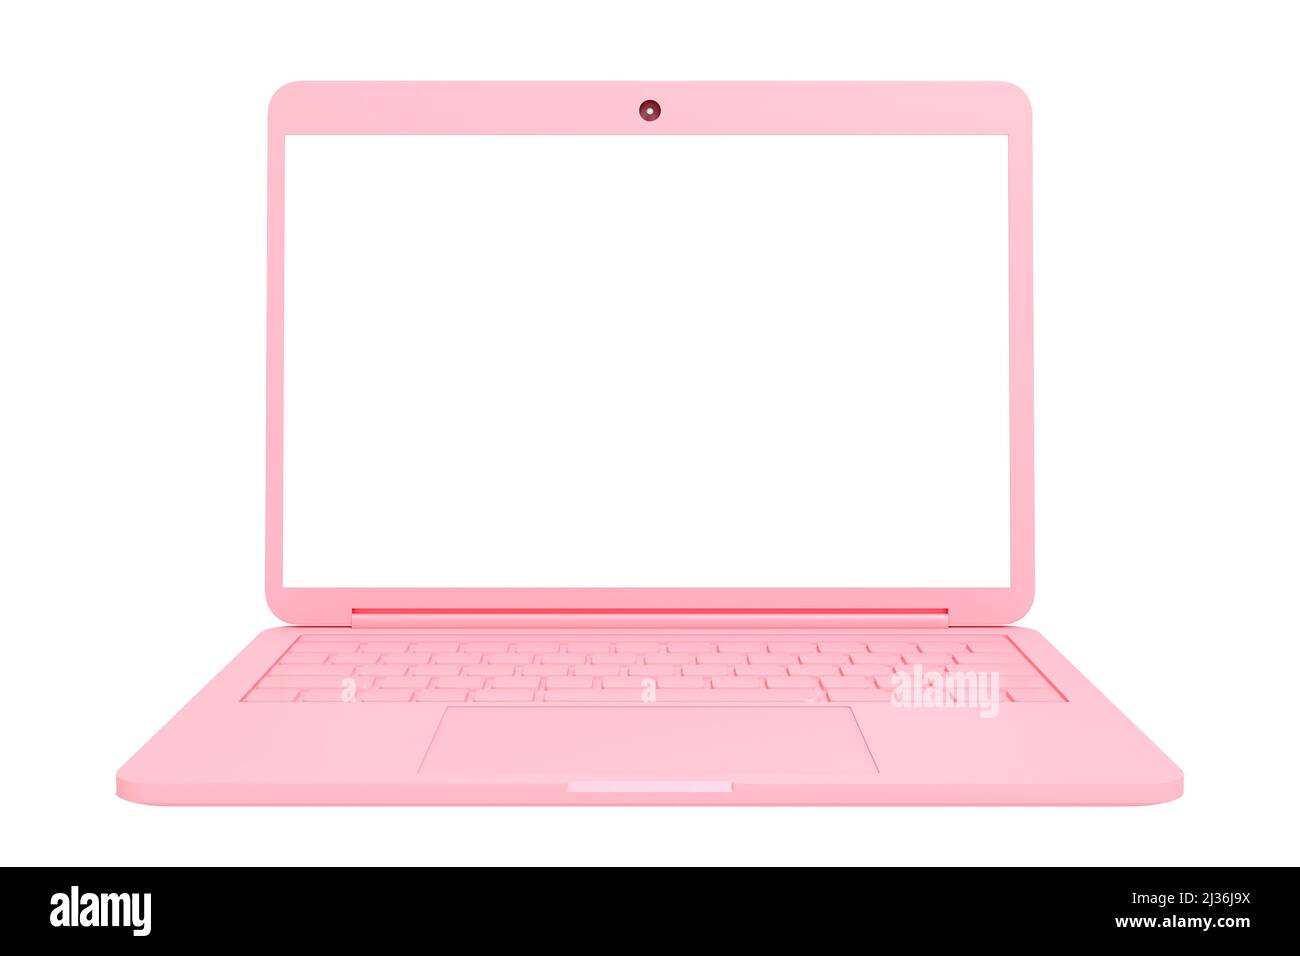 Máy tính xách tay màu hồng với màn hình trắng trên nền màu trắng là một sự kết hợp tinh tế giữa màu sắc và thiết kế. Đây là một chiếc laptop đầy nữ tính và đẹp mắt. Mới cài đặt phần mềm, bạn sẽ có thể trải nghiệm một cách tối ưu với hiệu năng vượt trội và màn hình sắc nét. (Pink laptop with white screen on white background is a delicate combination of color and design. This is a laptop full of femininity and beautiful. With the software installation, you will be able to experience optimally with superior performance and sharp screen.)